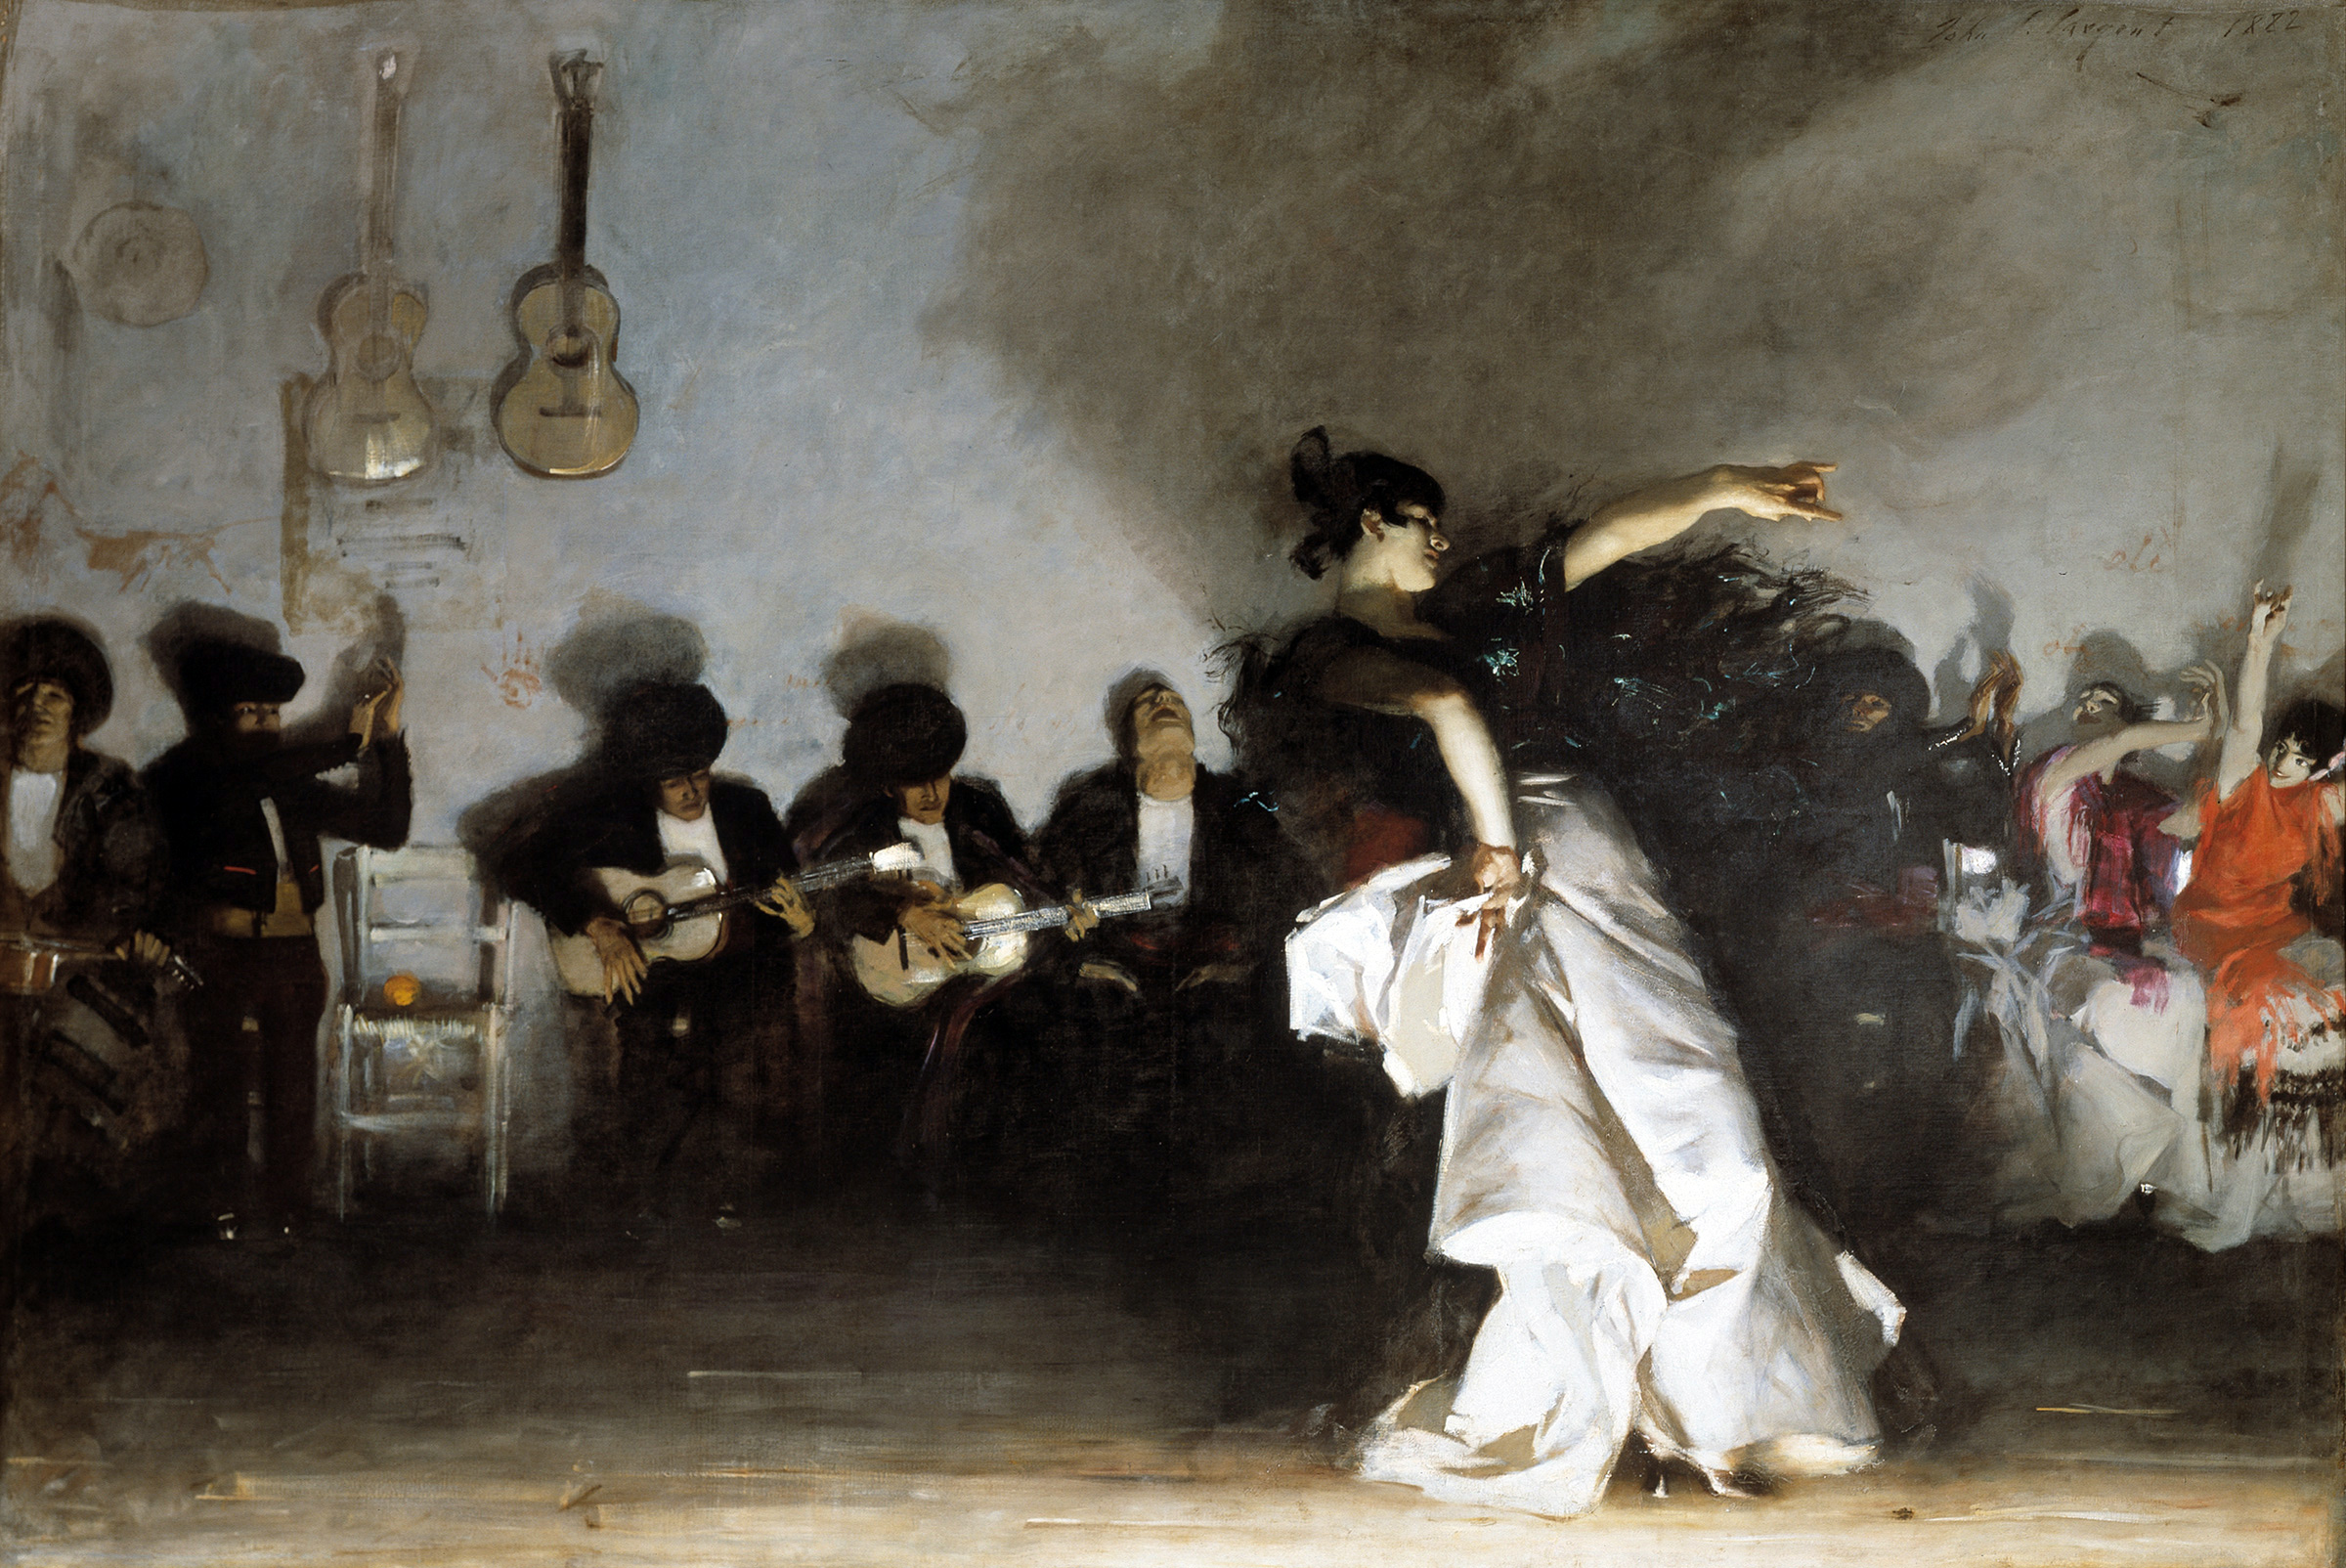 Эль Халео by John Singer Sargent - 1882 - 237 × 352 cm 